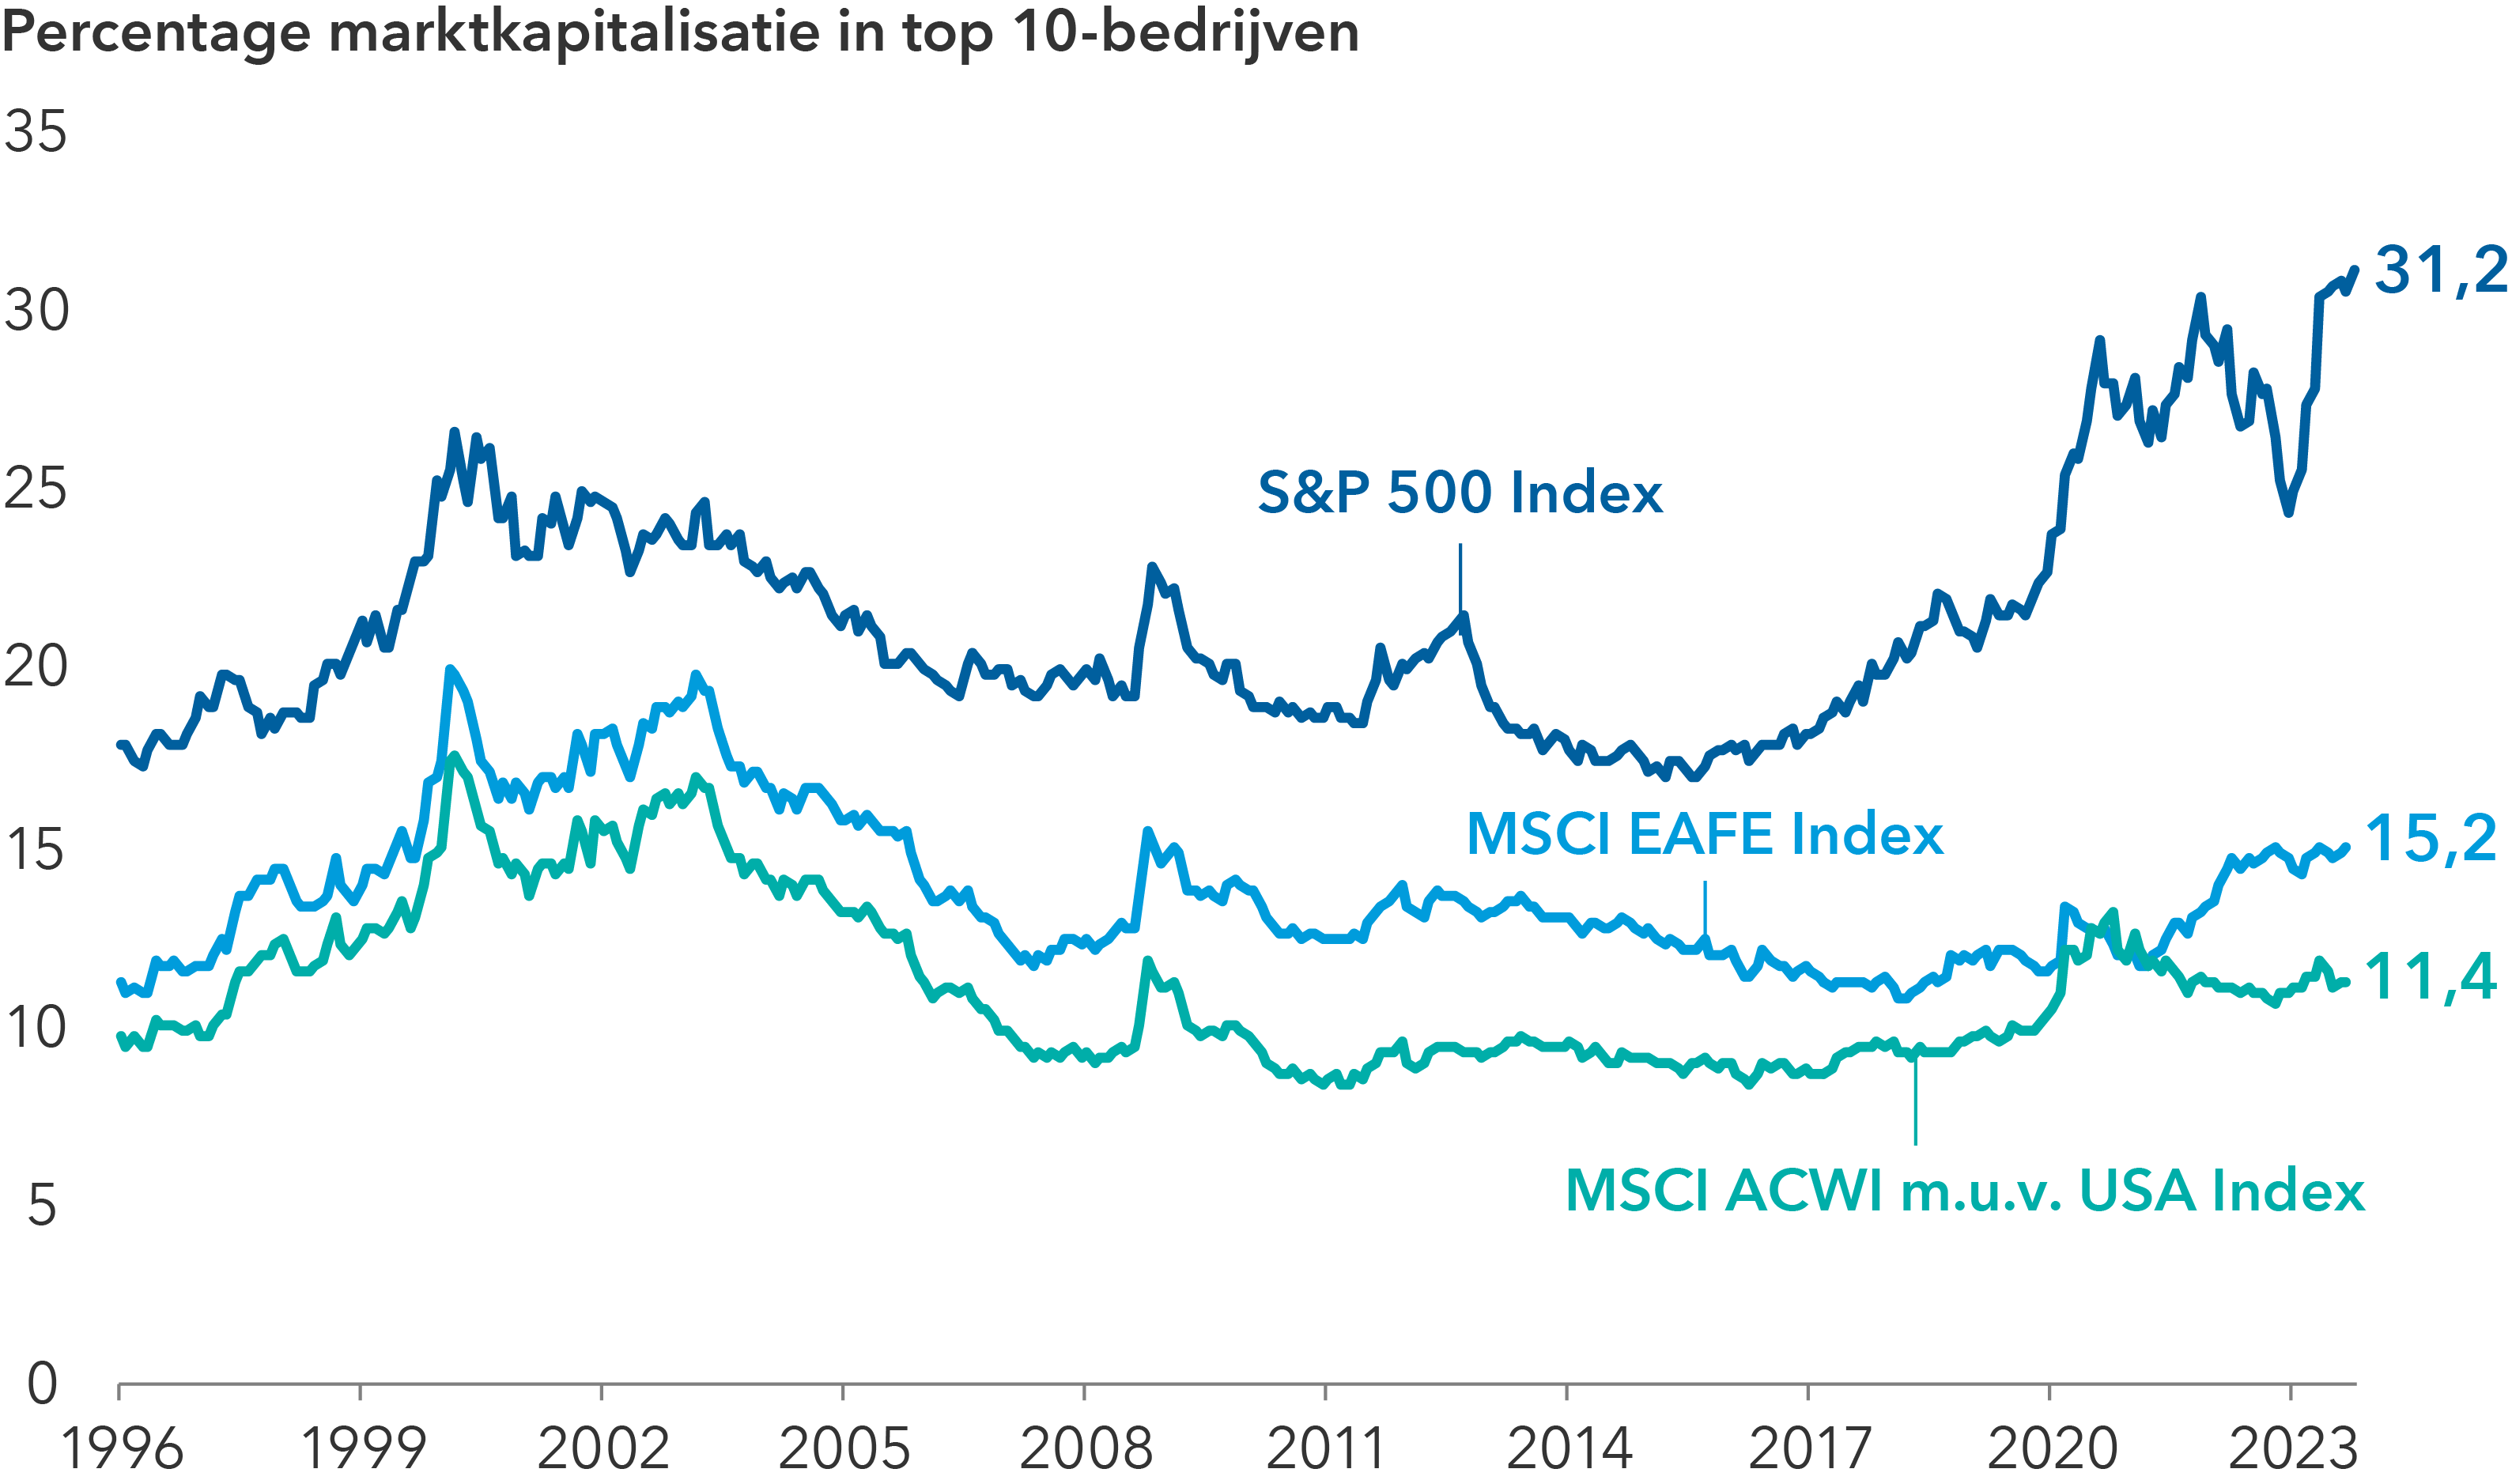 Lijngrafiek met de weging van de 10 grootste bedrijven van 1996 tot oktober 2023 in drie aandelenindices: De S&P 500 Index, de MSCI EAFE Index en de MSCI ACWI ex USA Index. Op 31 oktober 2023 was de weging in de indices als volgt: 31,2% voor de S&P 500 Index; 15,2% voor de MSCI EAFE Index en 11,4% voor de MSCI ACWI ex USA Index.